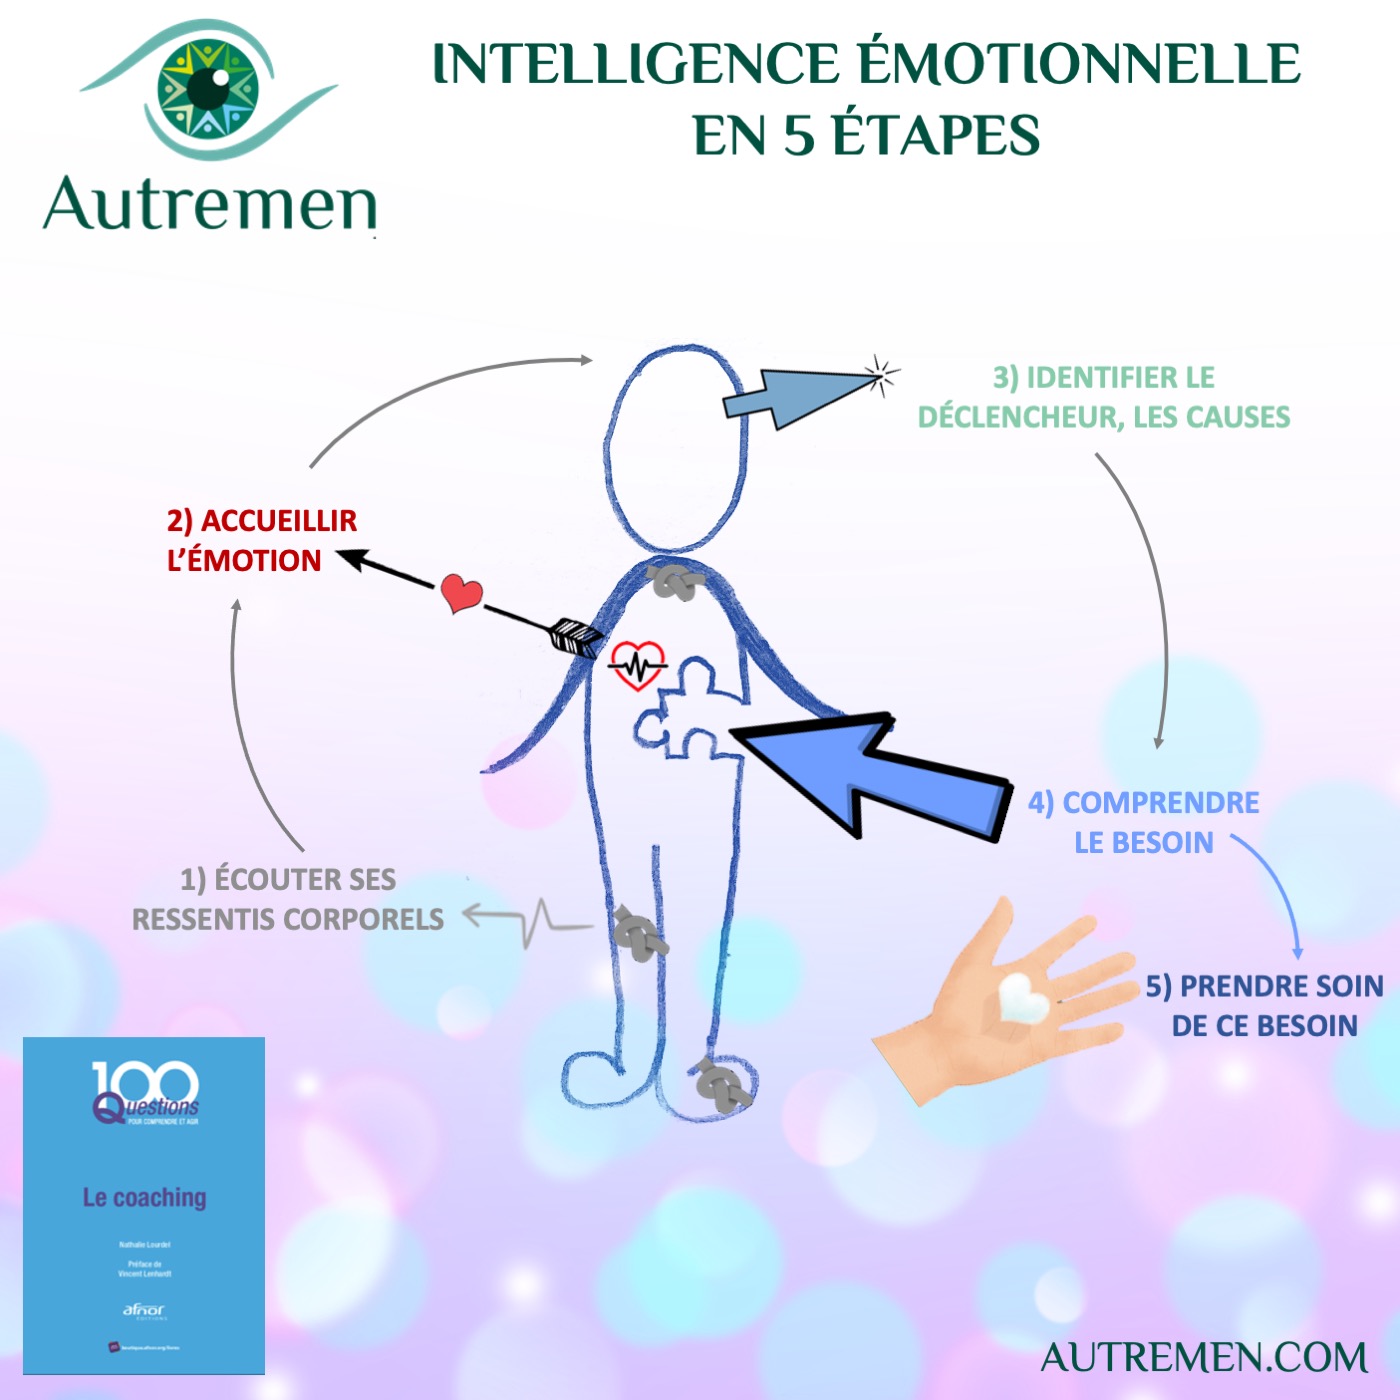 Avez-vous développé votre intelligence émotionnelle ?